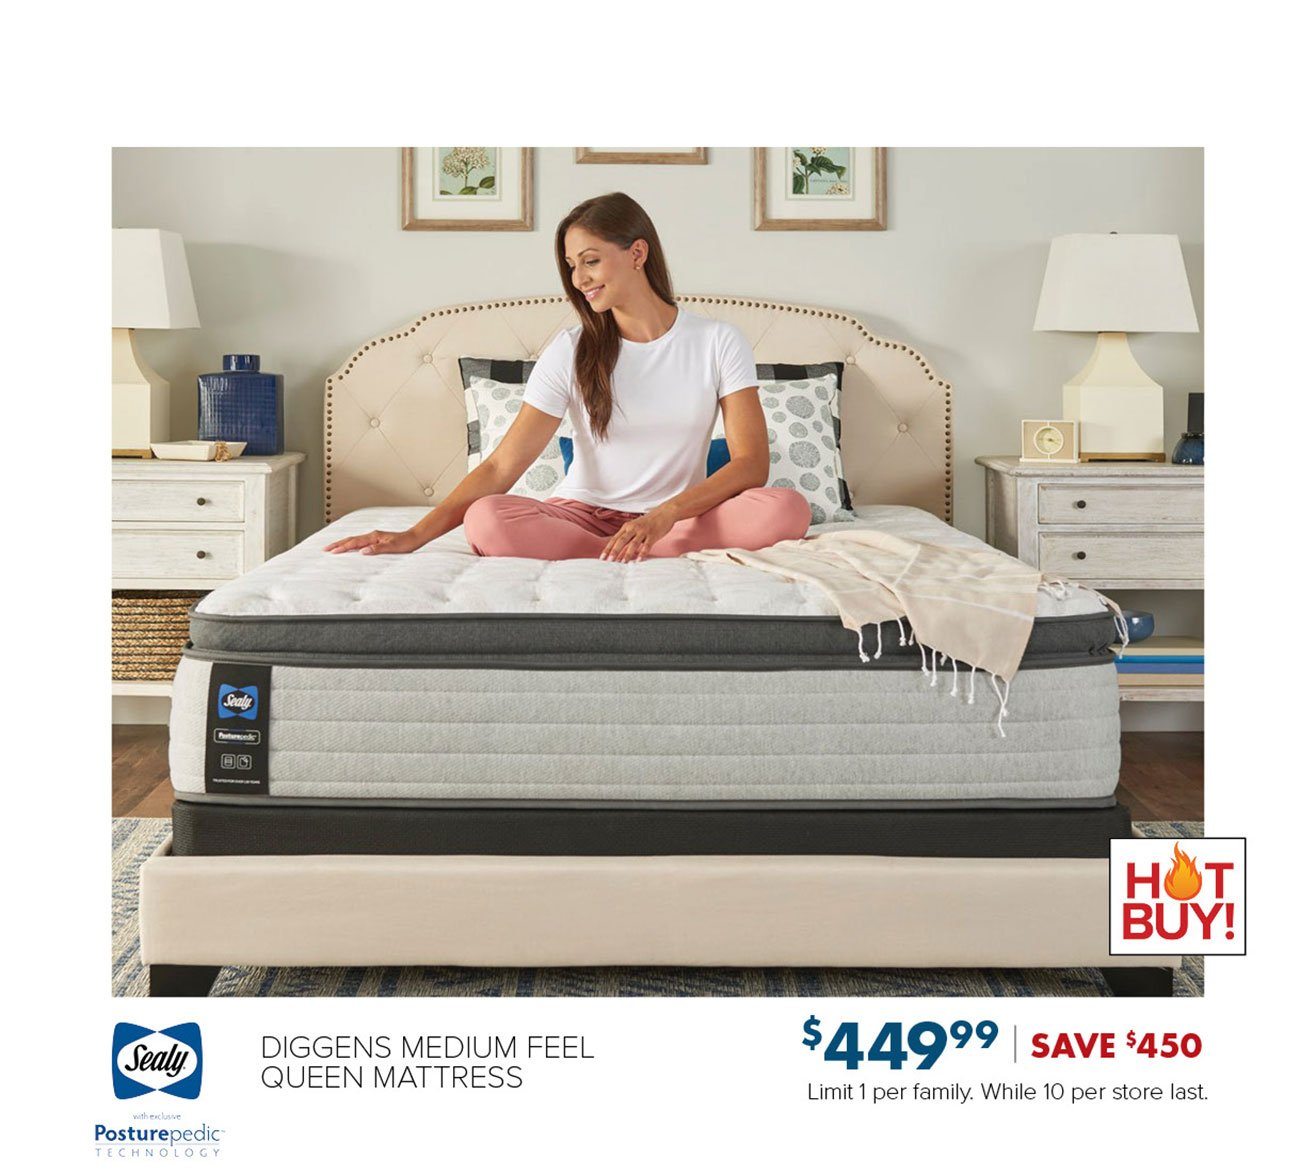 Sealy-diggins-queen-mattress